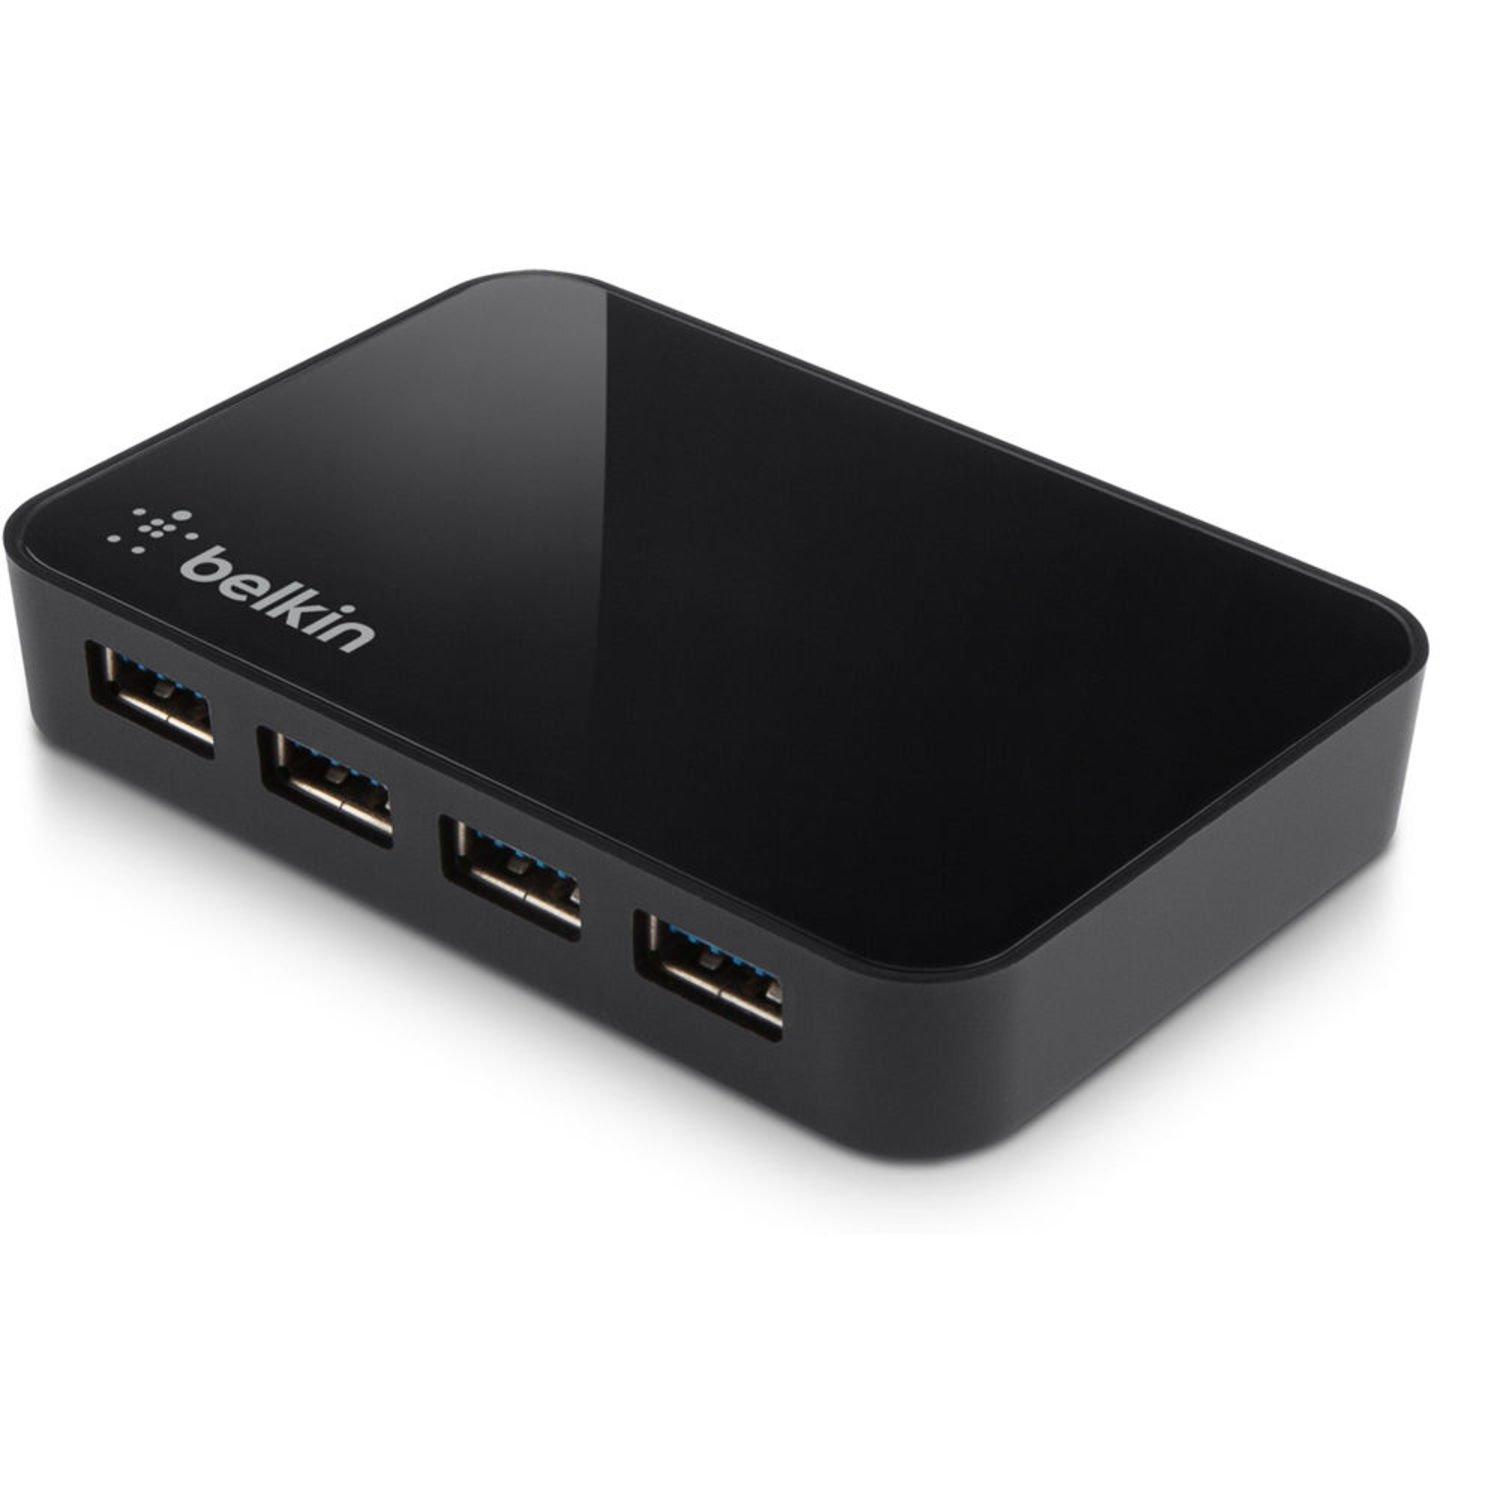 list item 1 of 2 Belkin USB 3.0 4-Port USB Hub